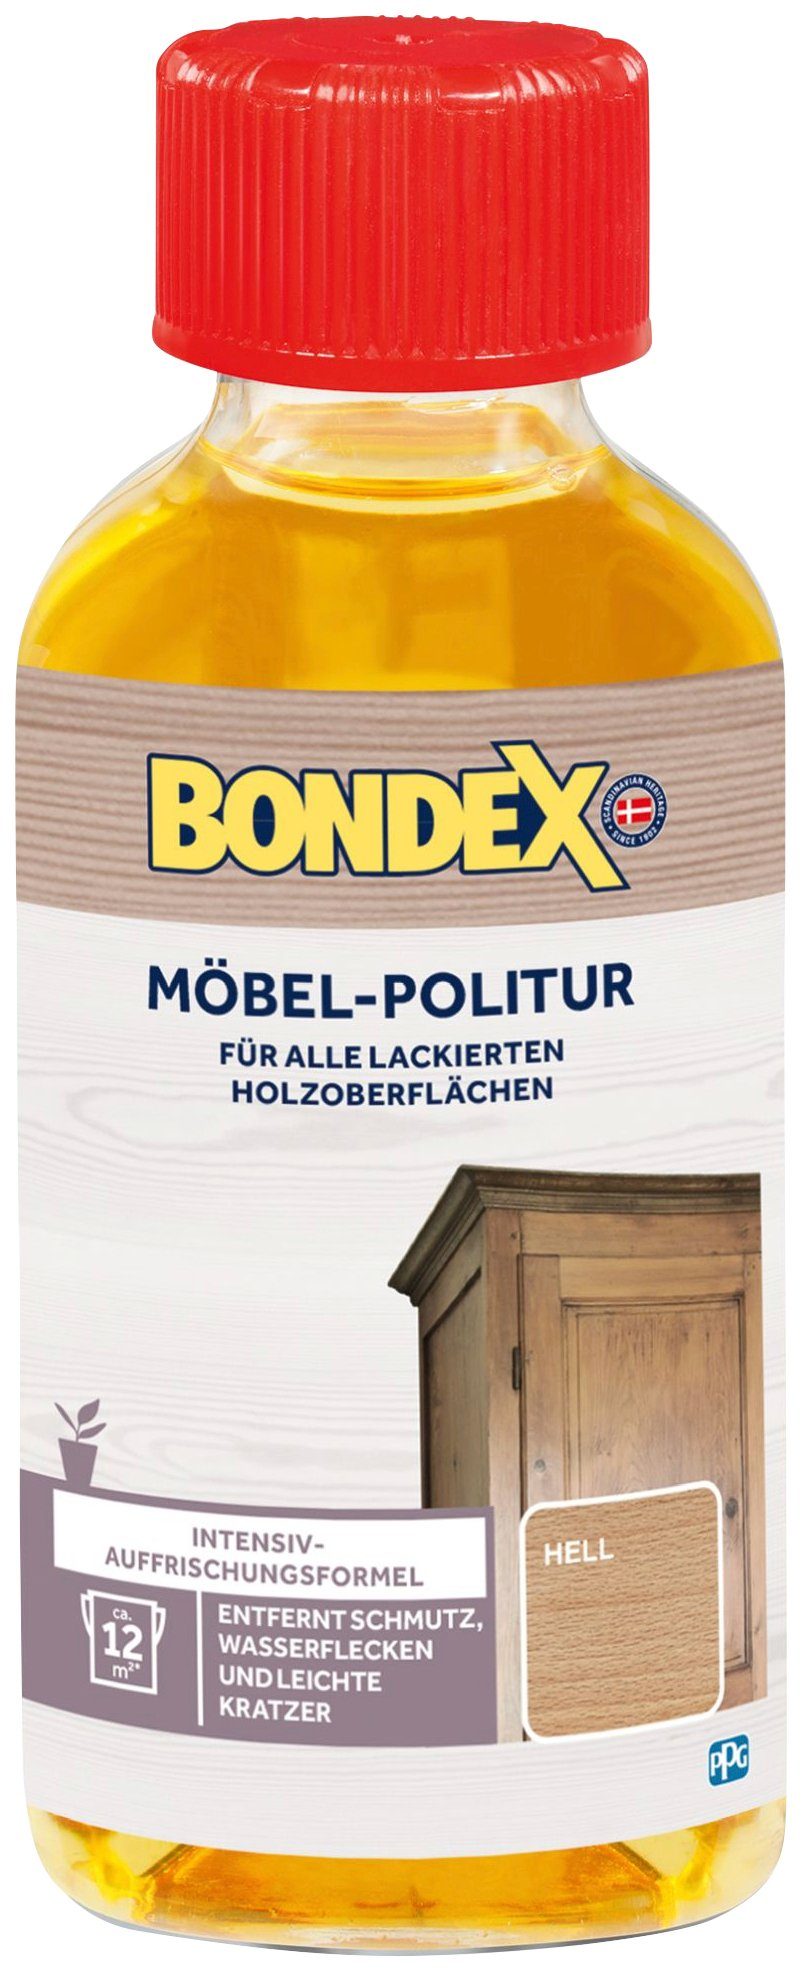 MÖBEL-POLITUR Holzpflegeöl, l 0,15 natur Dunkel Bondex